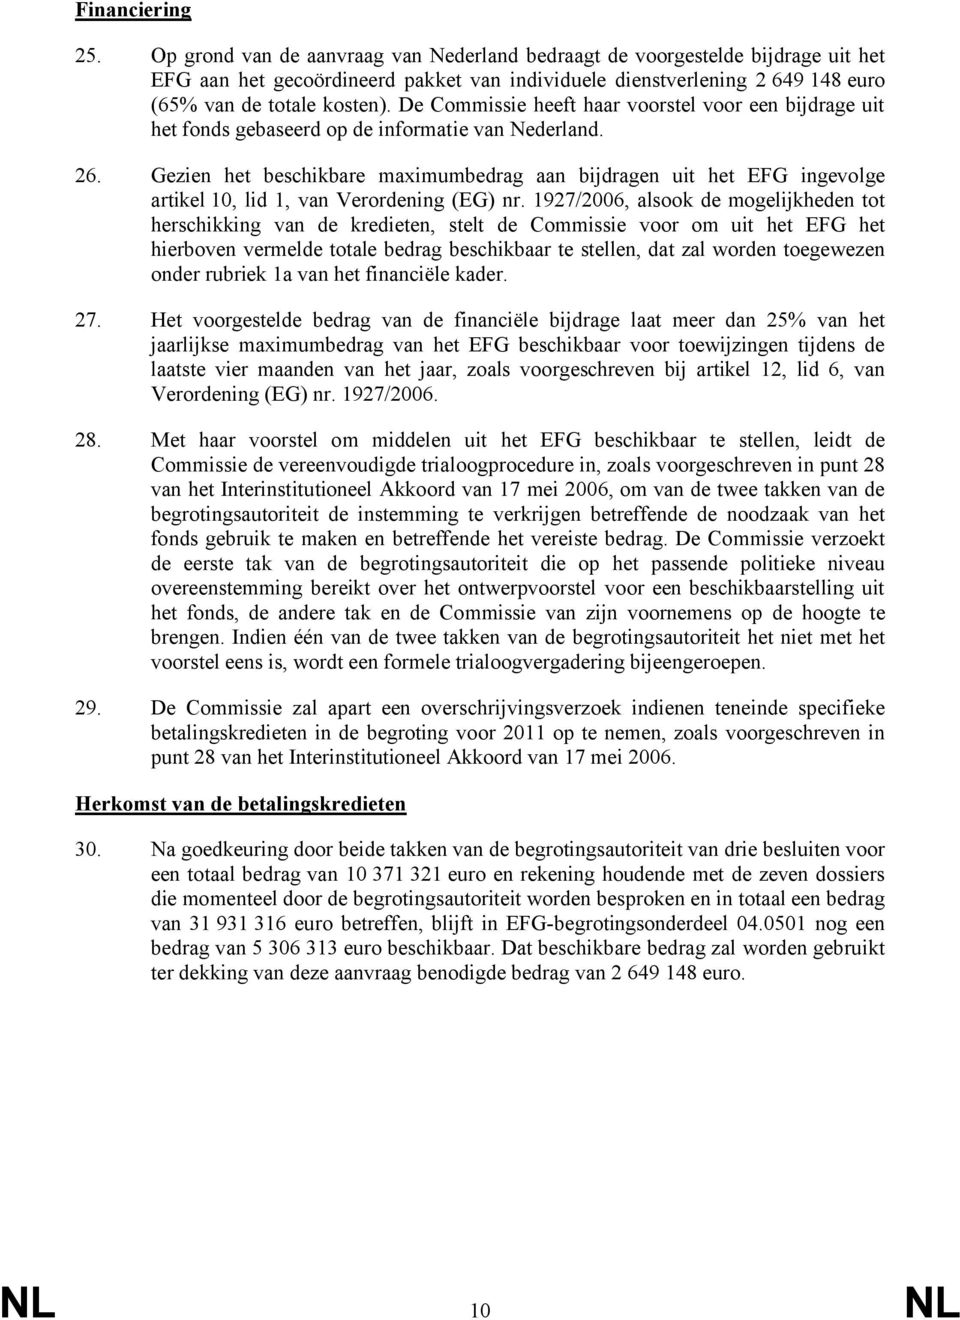 De Commissie heeft haar voorstel voor een bijdrage uit het fonds gebaseerd op de informatie van Nederland. 26.